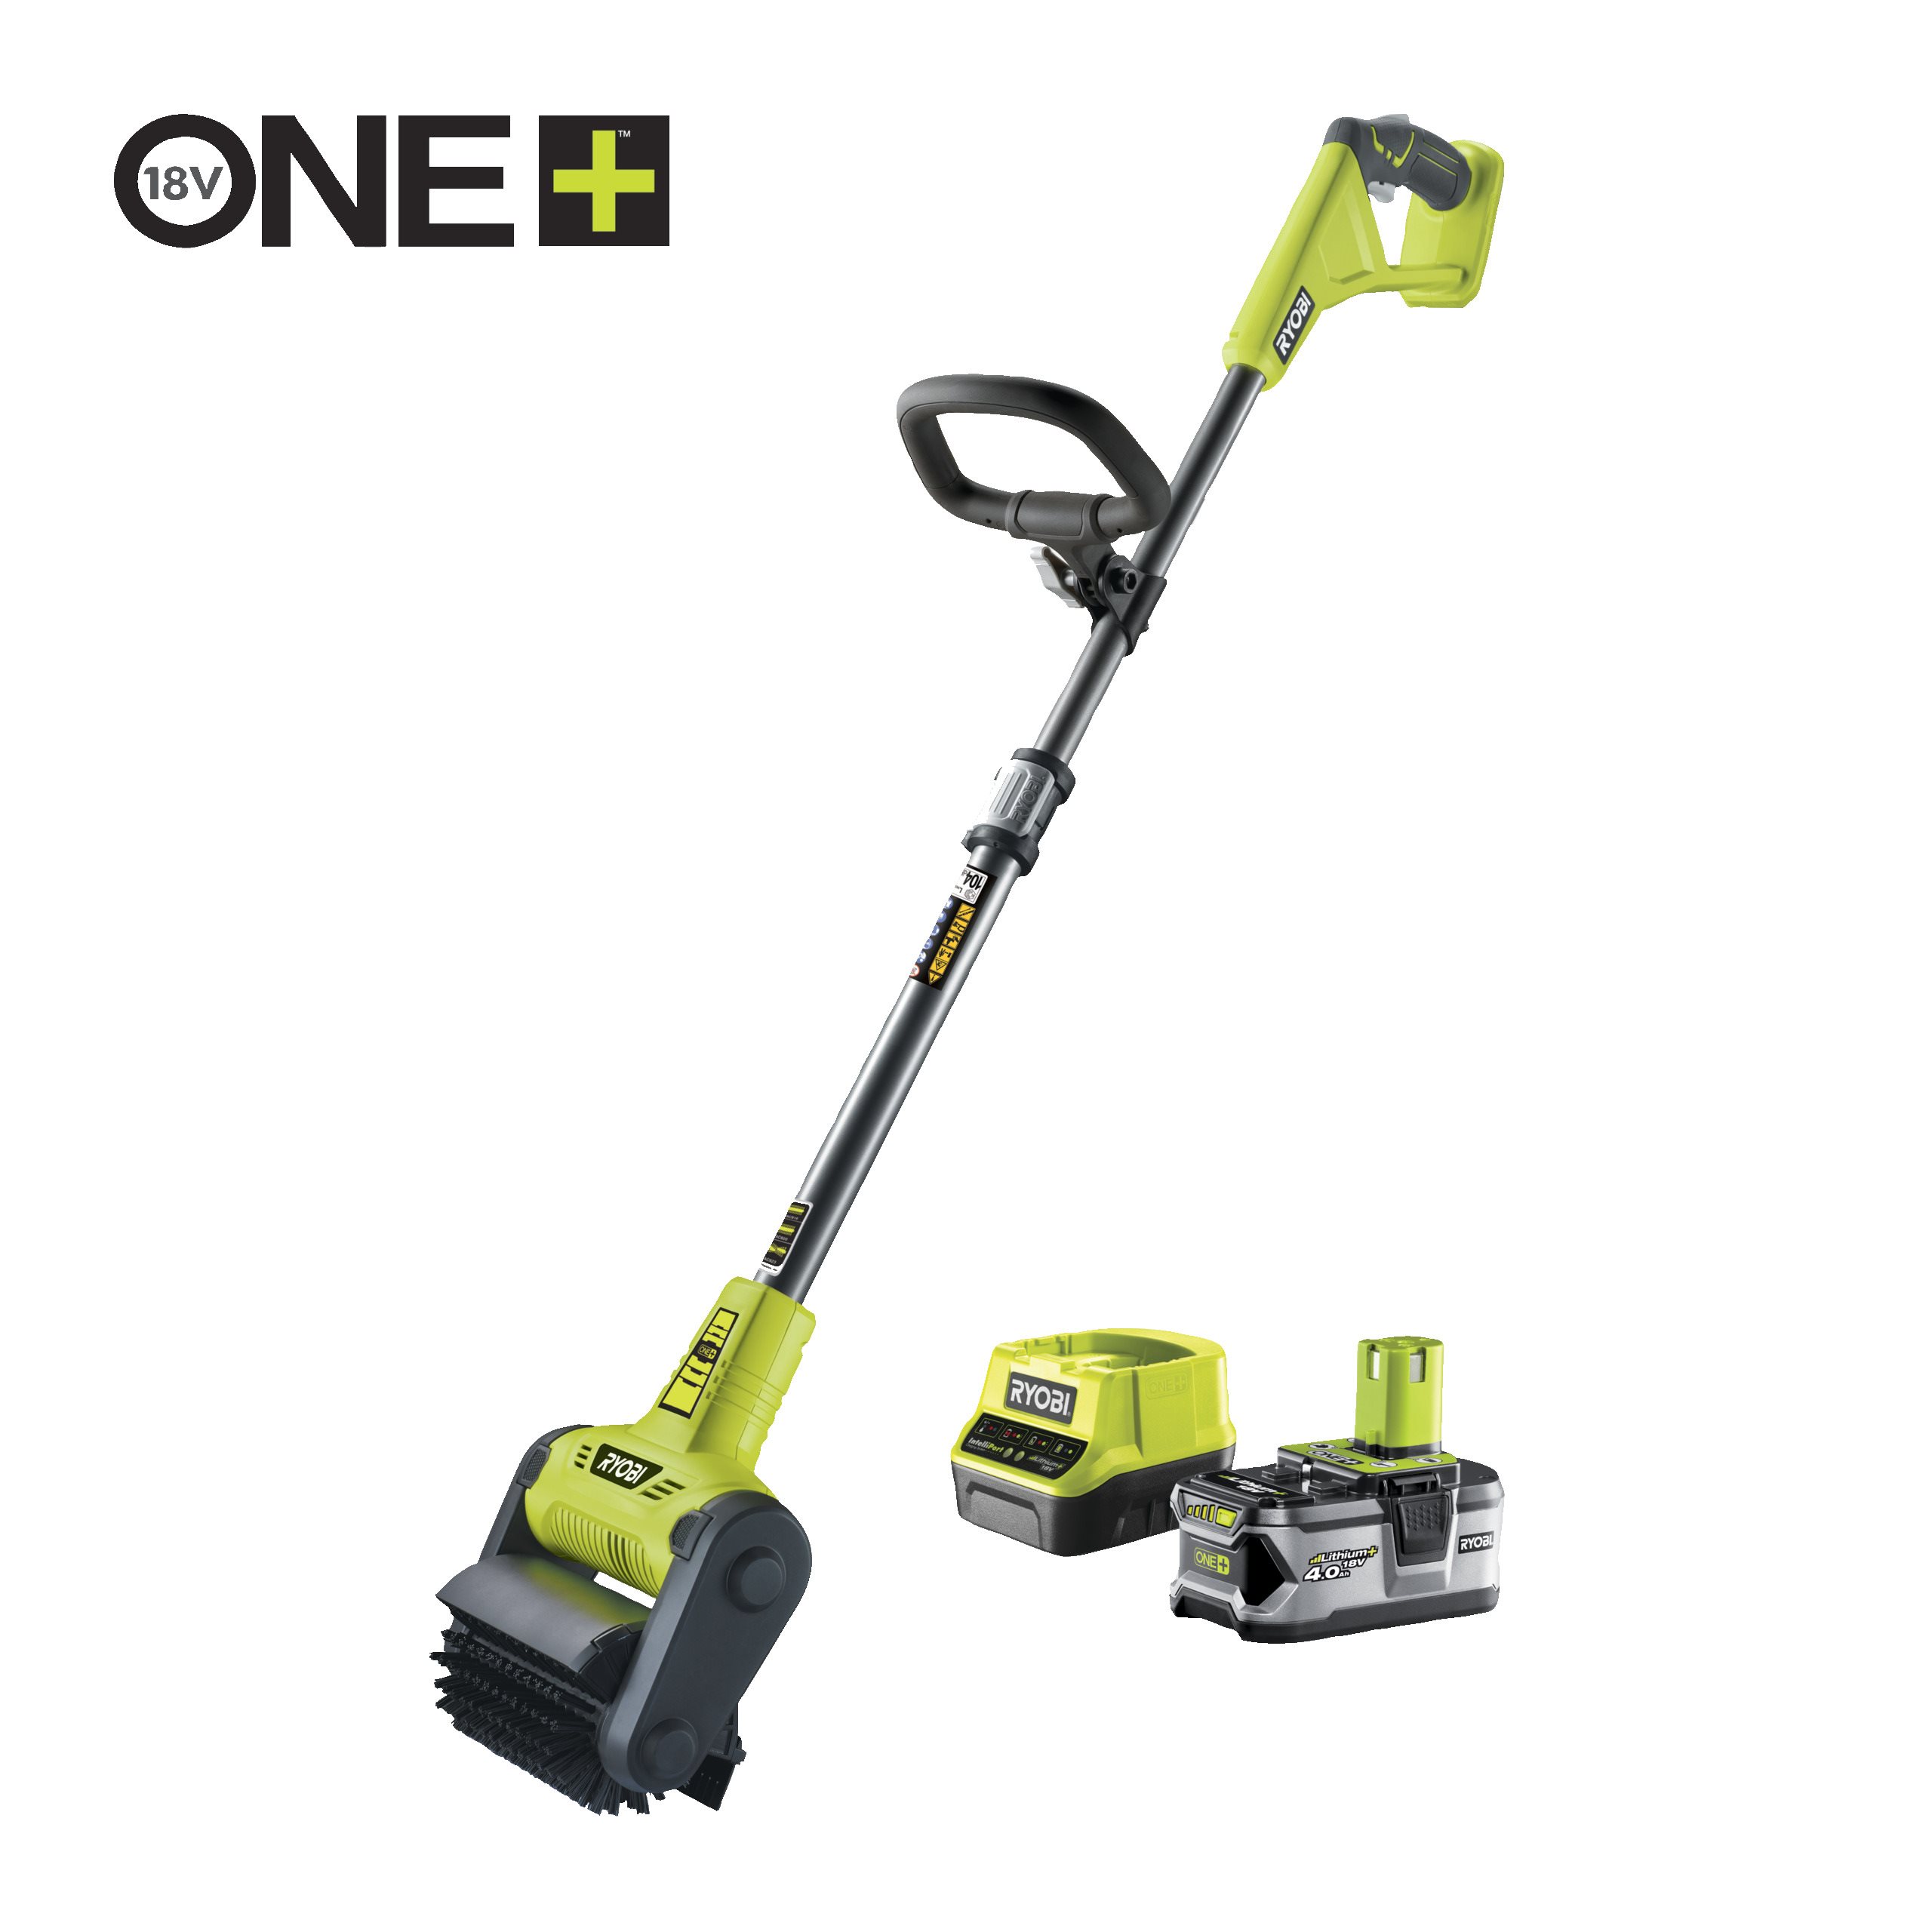 Limpiador de suelos con cepillo de limpieza 18V ONE+™ (1x4.0Ah)